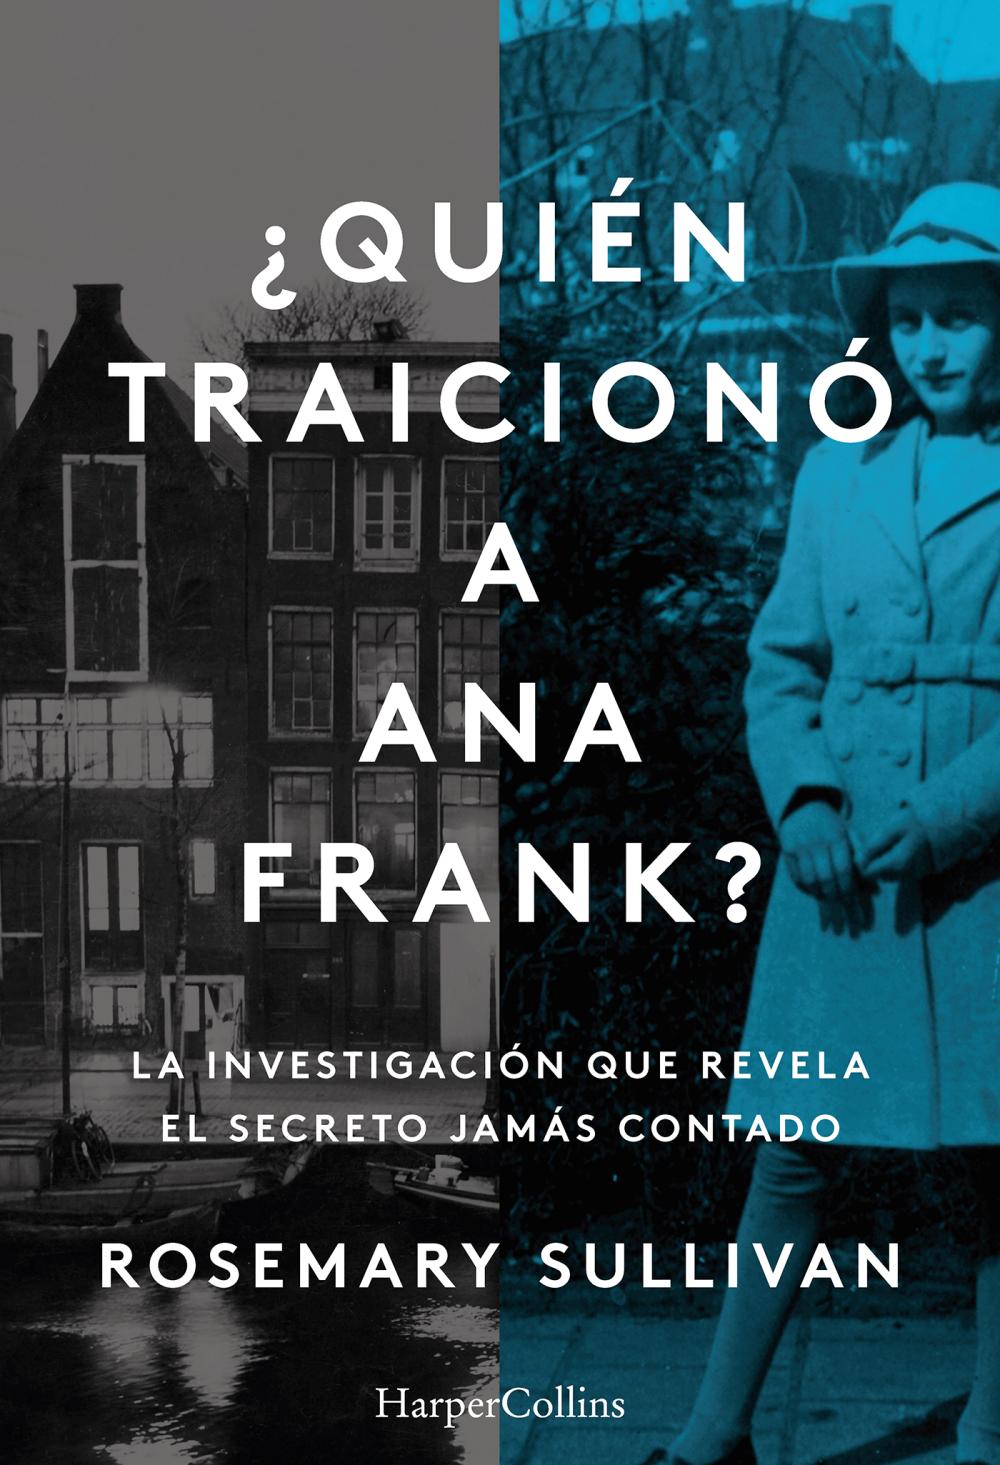 ¿Quién traicionó a Ana Frank? La investigación que revela el secreto jamás contado